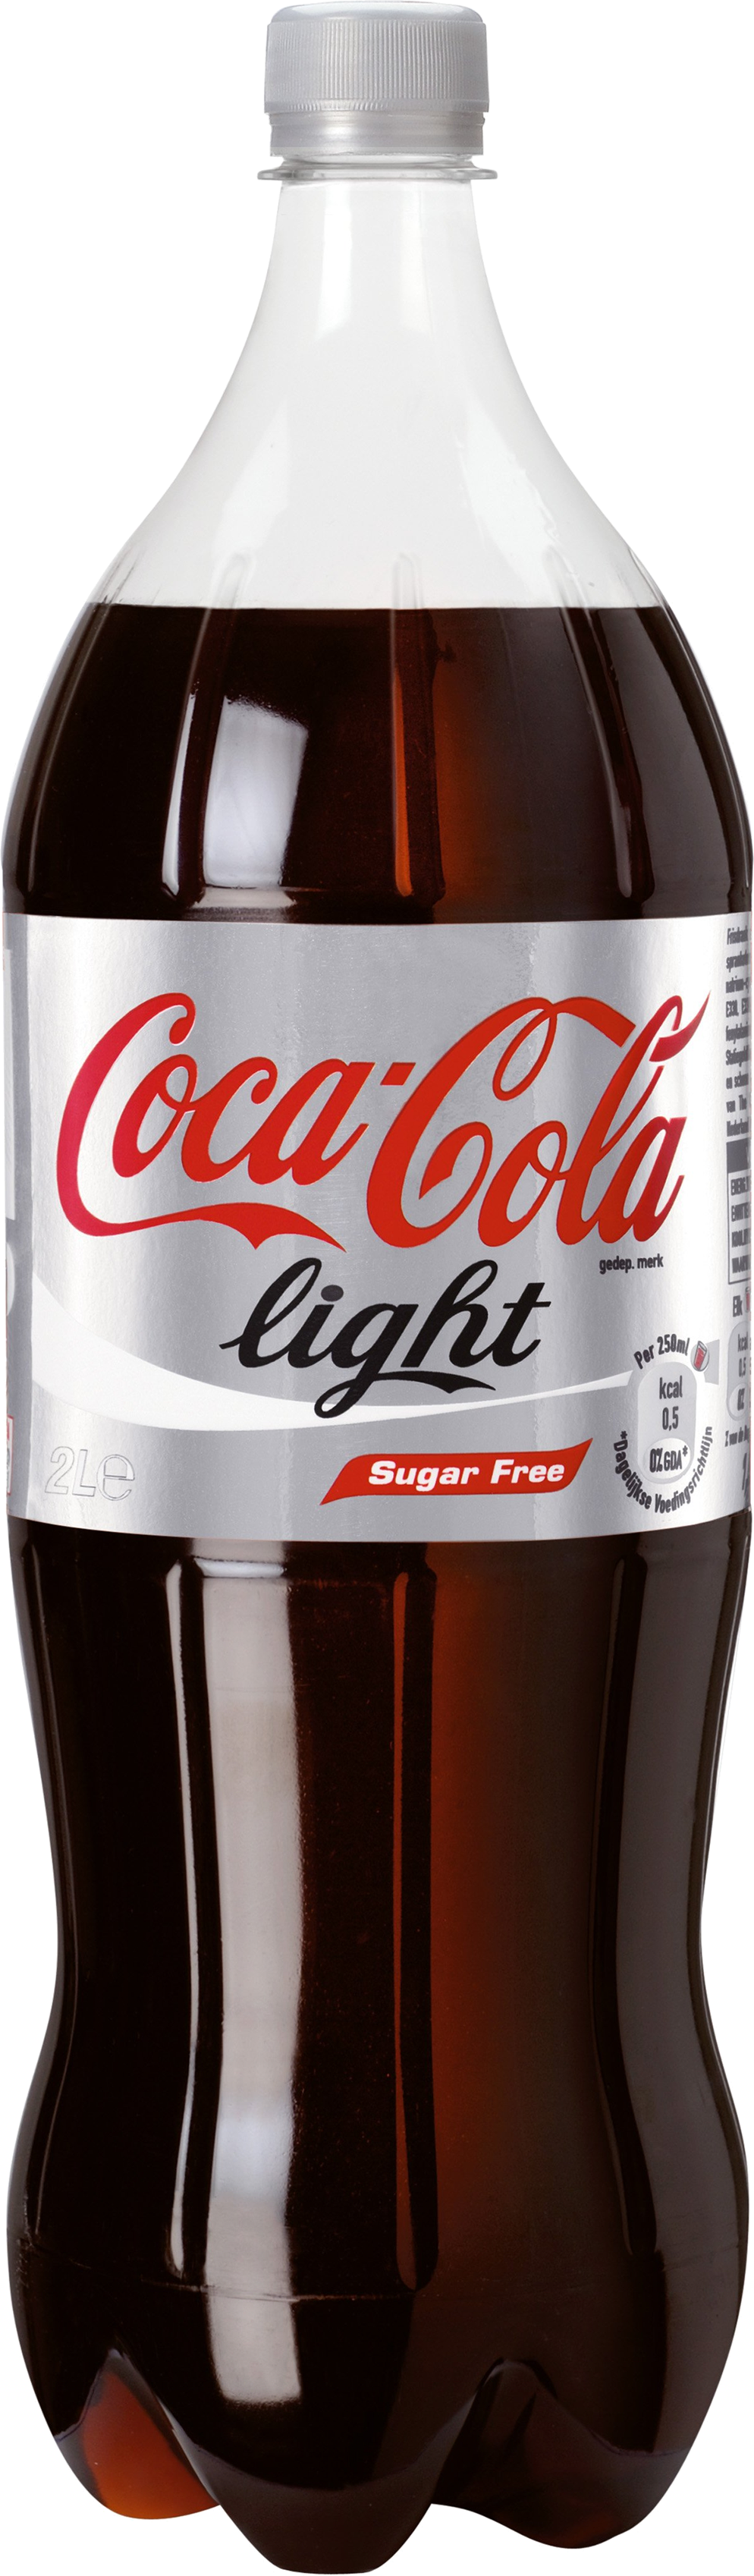 Coca-cola Clipart - Coca Cola Light Bottles (994x3395)